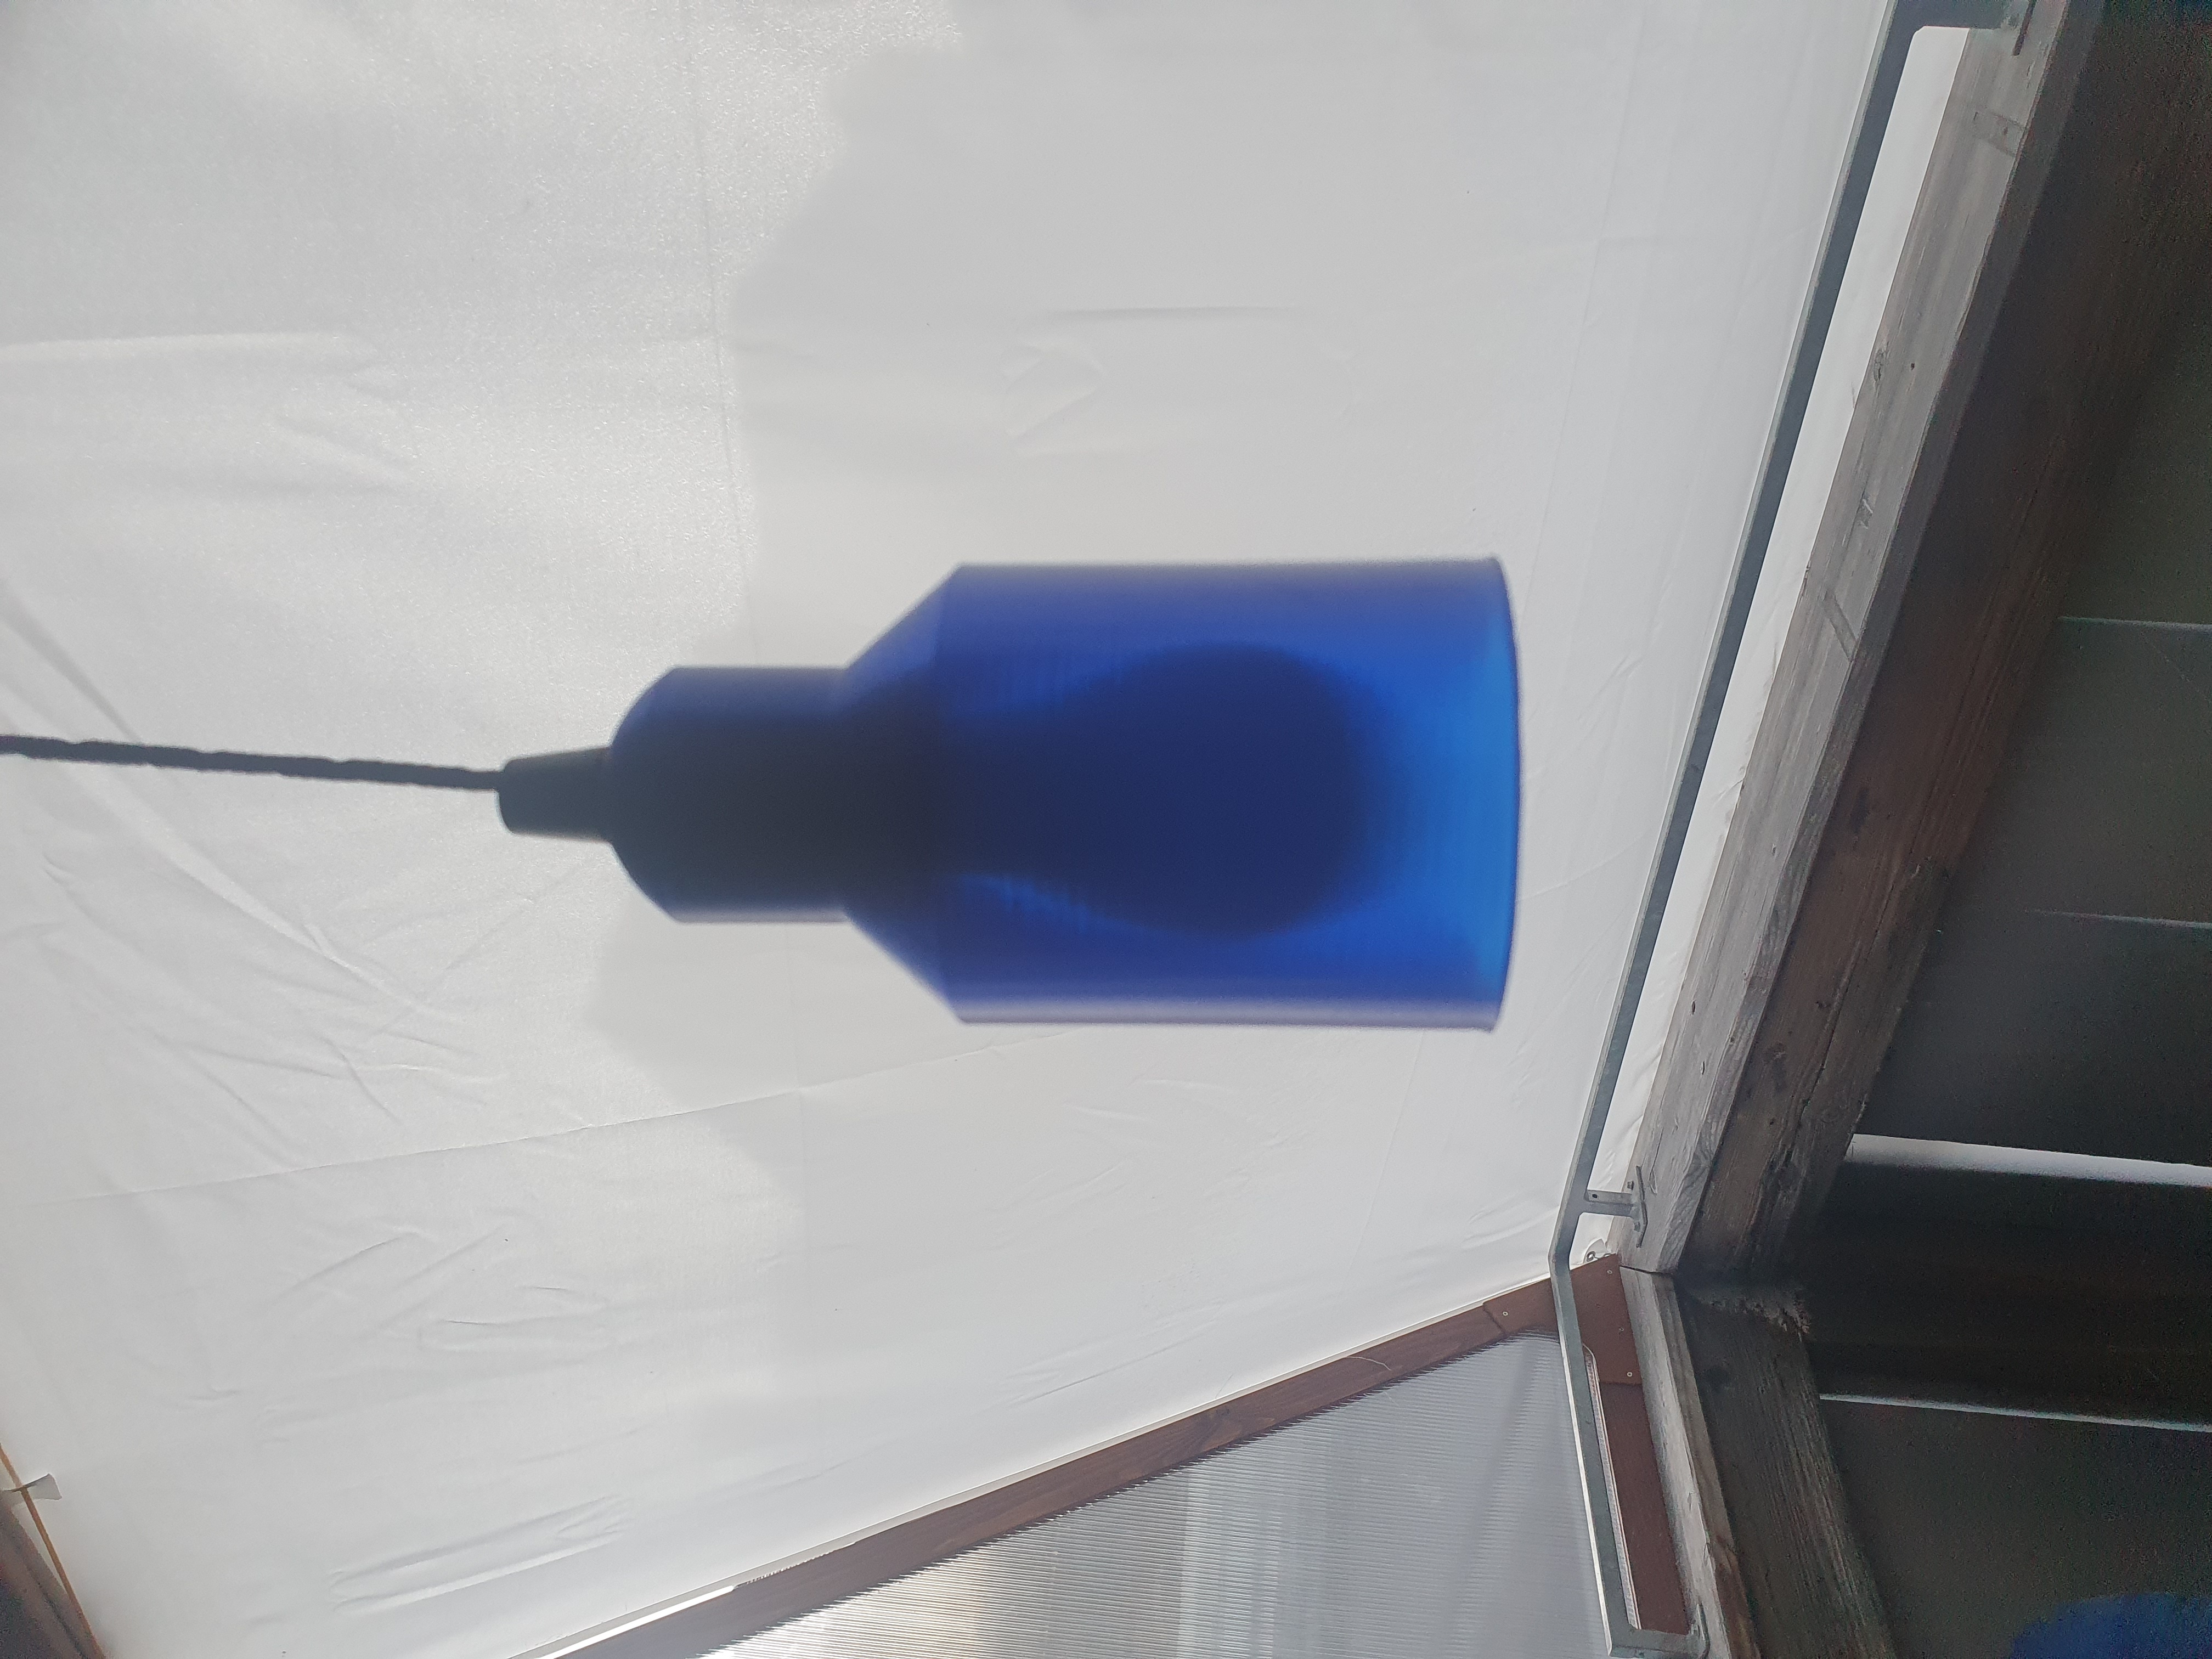 Lamp shade for LED bulb (spiral vase mode)